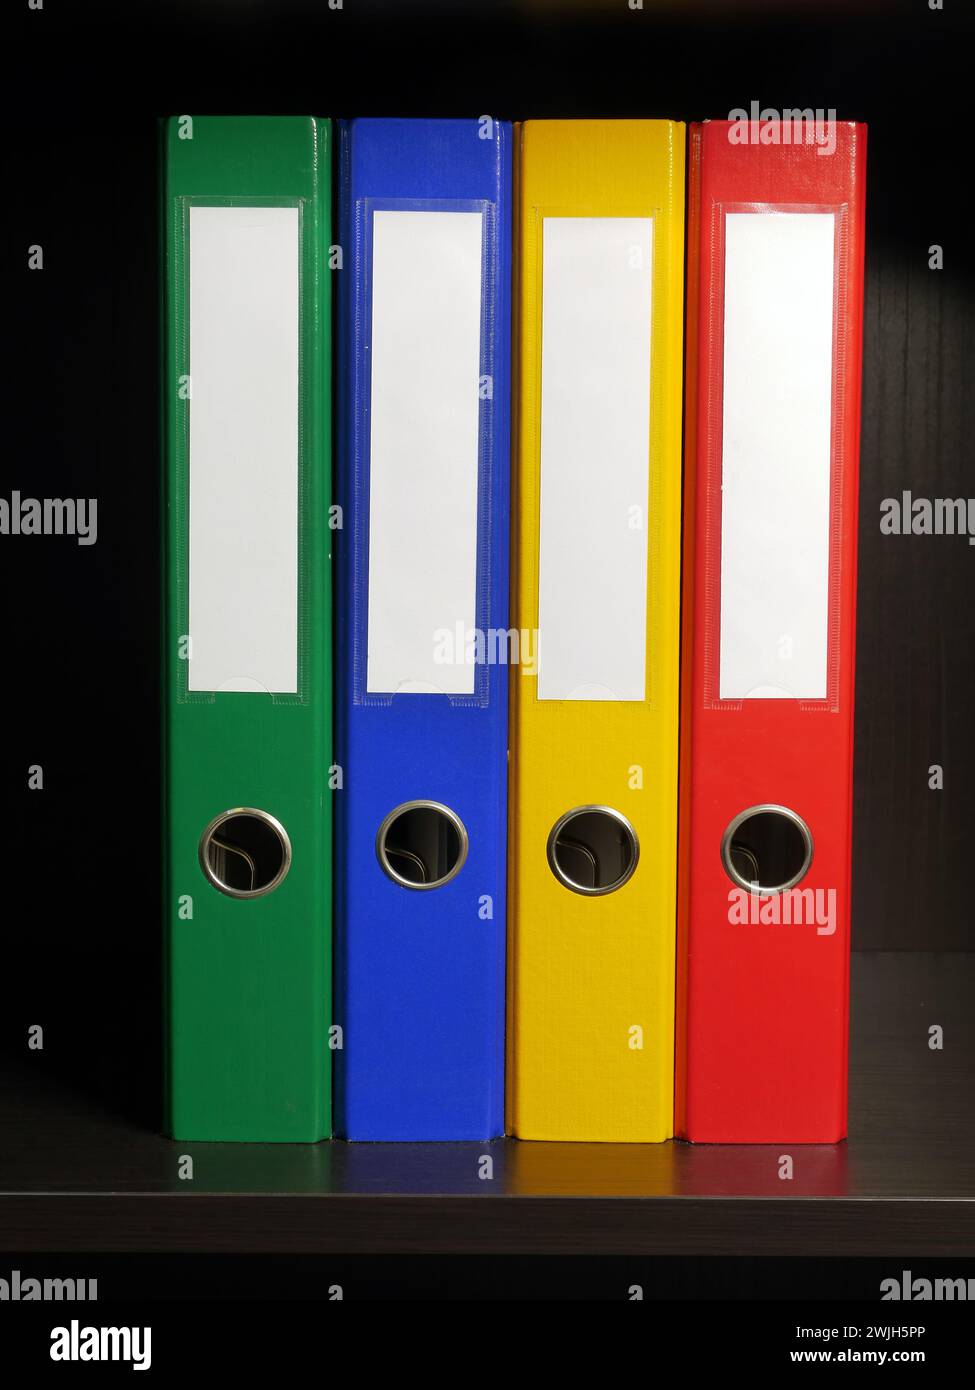 Vier leere Ordner in den Farben Grün, Blau, Gelb und Rot im schwarzen Schrank Stockfoto